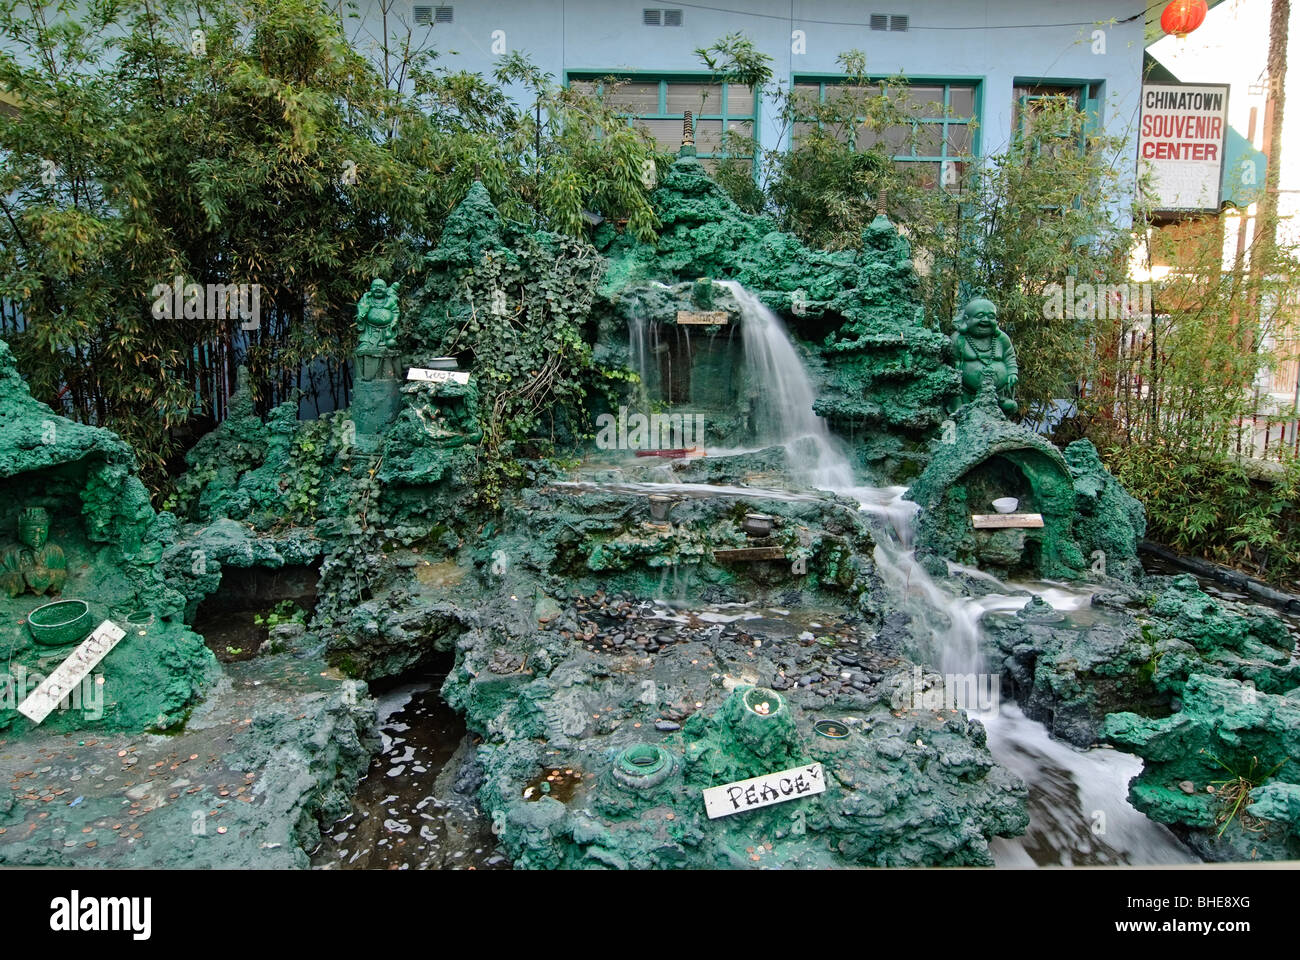 Ich wünsche Brunnen in Los Angeles Chinatown. Stockfoto